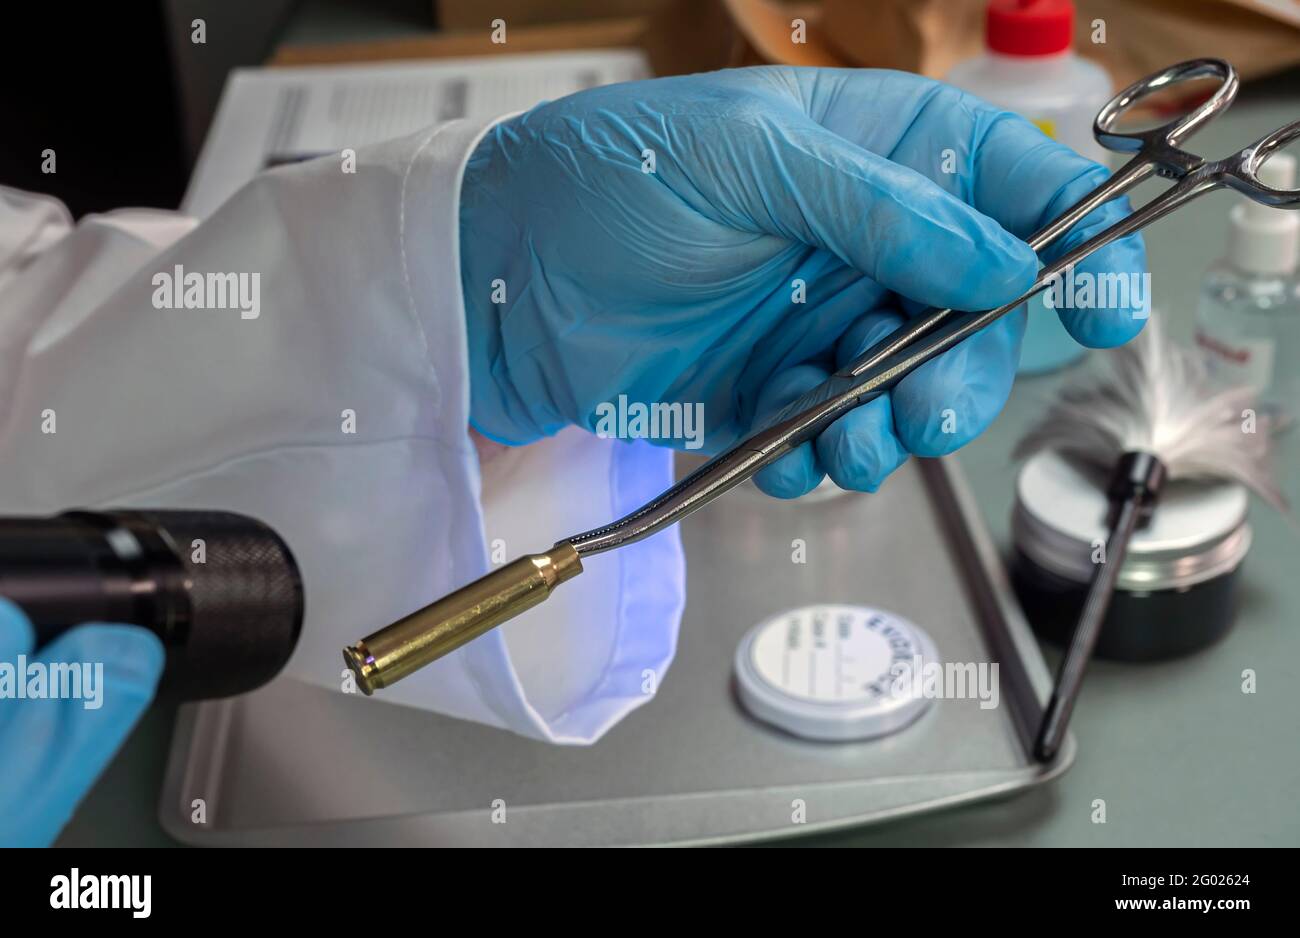 La police judiciaire examine le boîtier à balles avec une lampe UV pour rechercher les empreintes du suspect dans le meurtre, image conceptuelle Banque D'Images